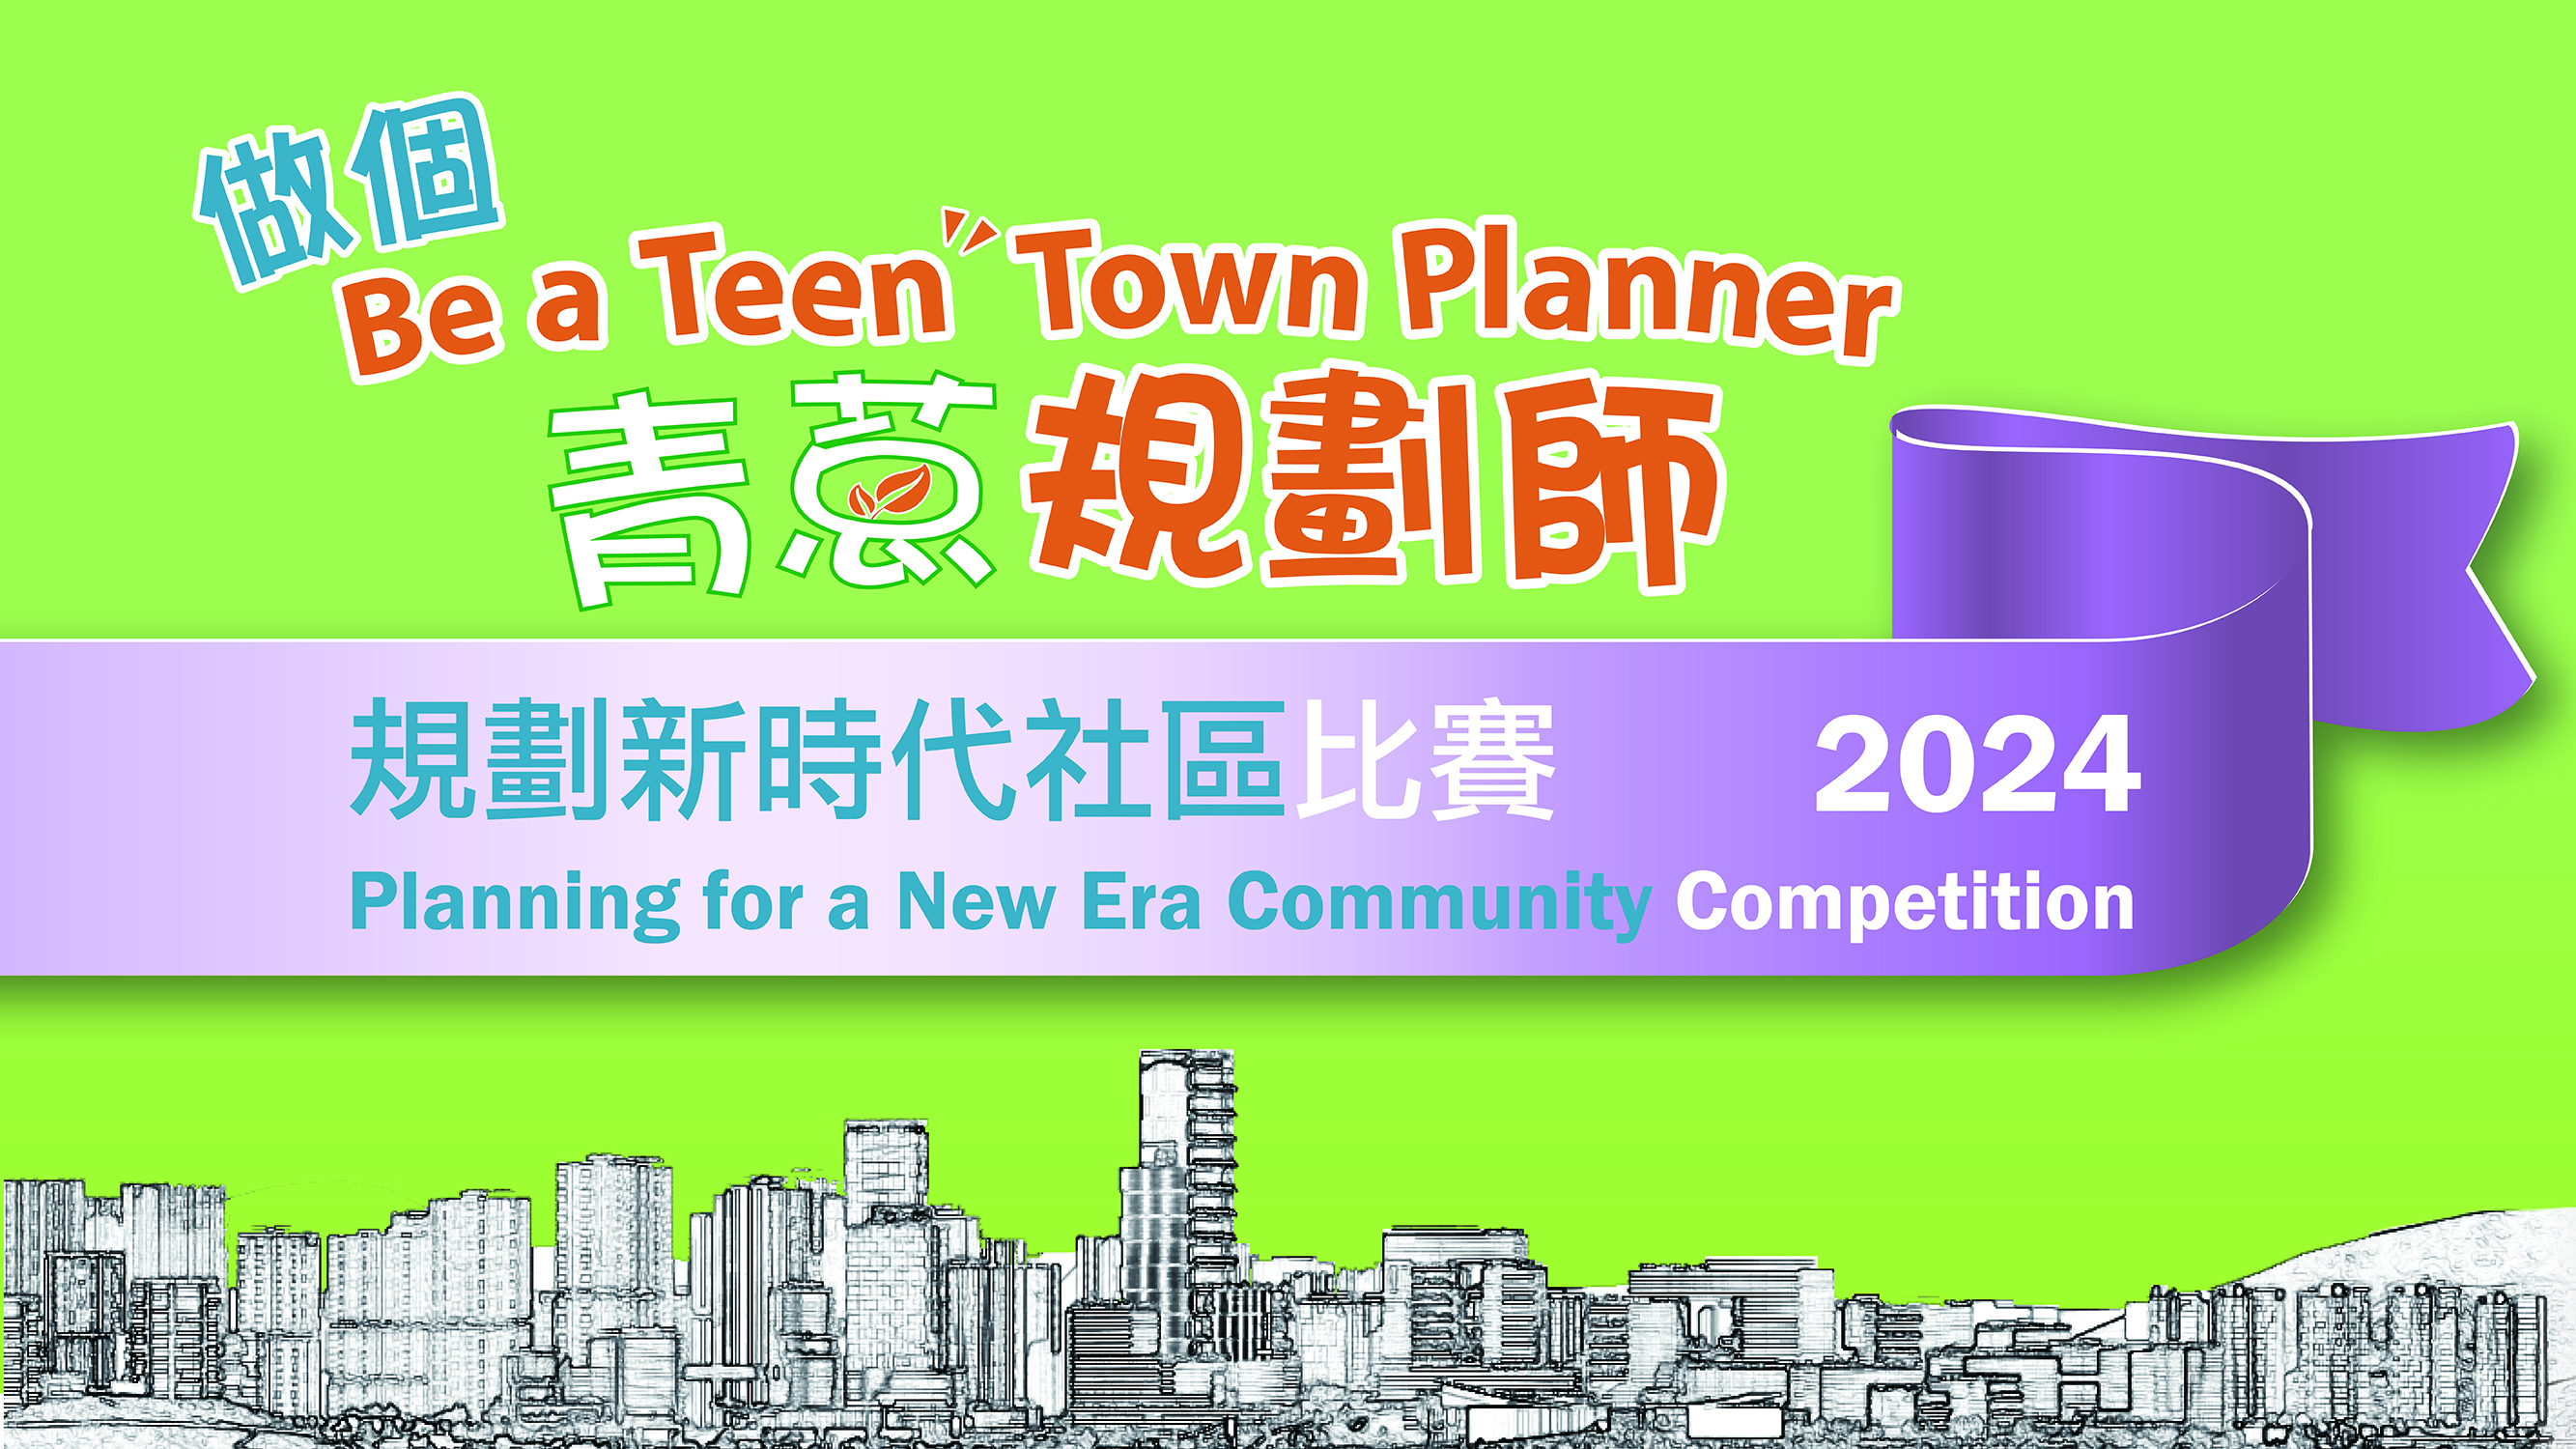 「做个青葱规划师 — 规划新时代社区」比赛 2024